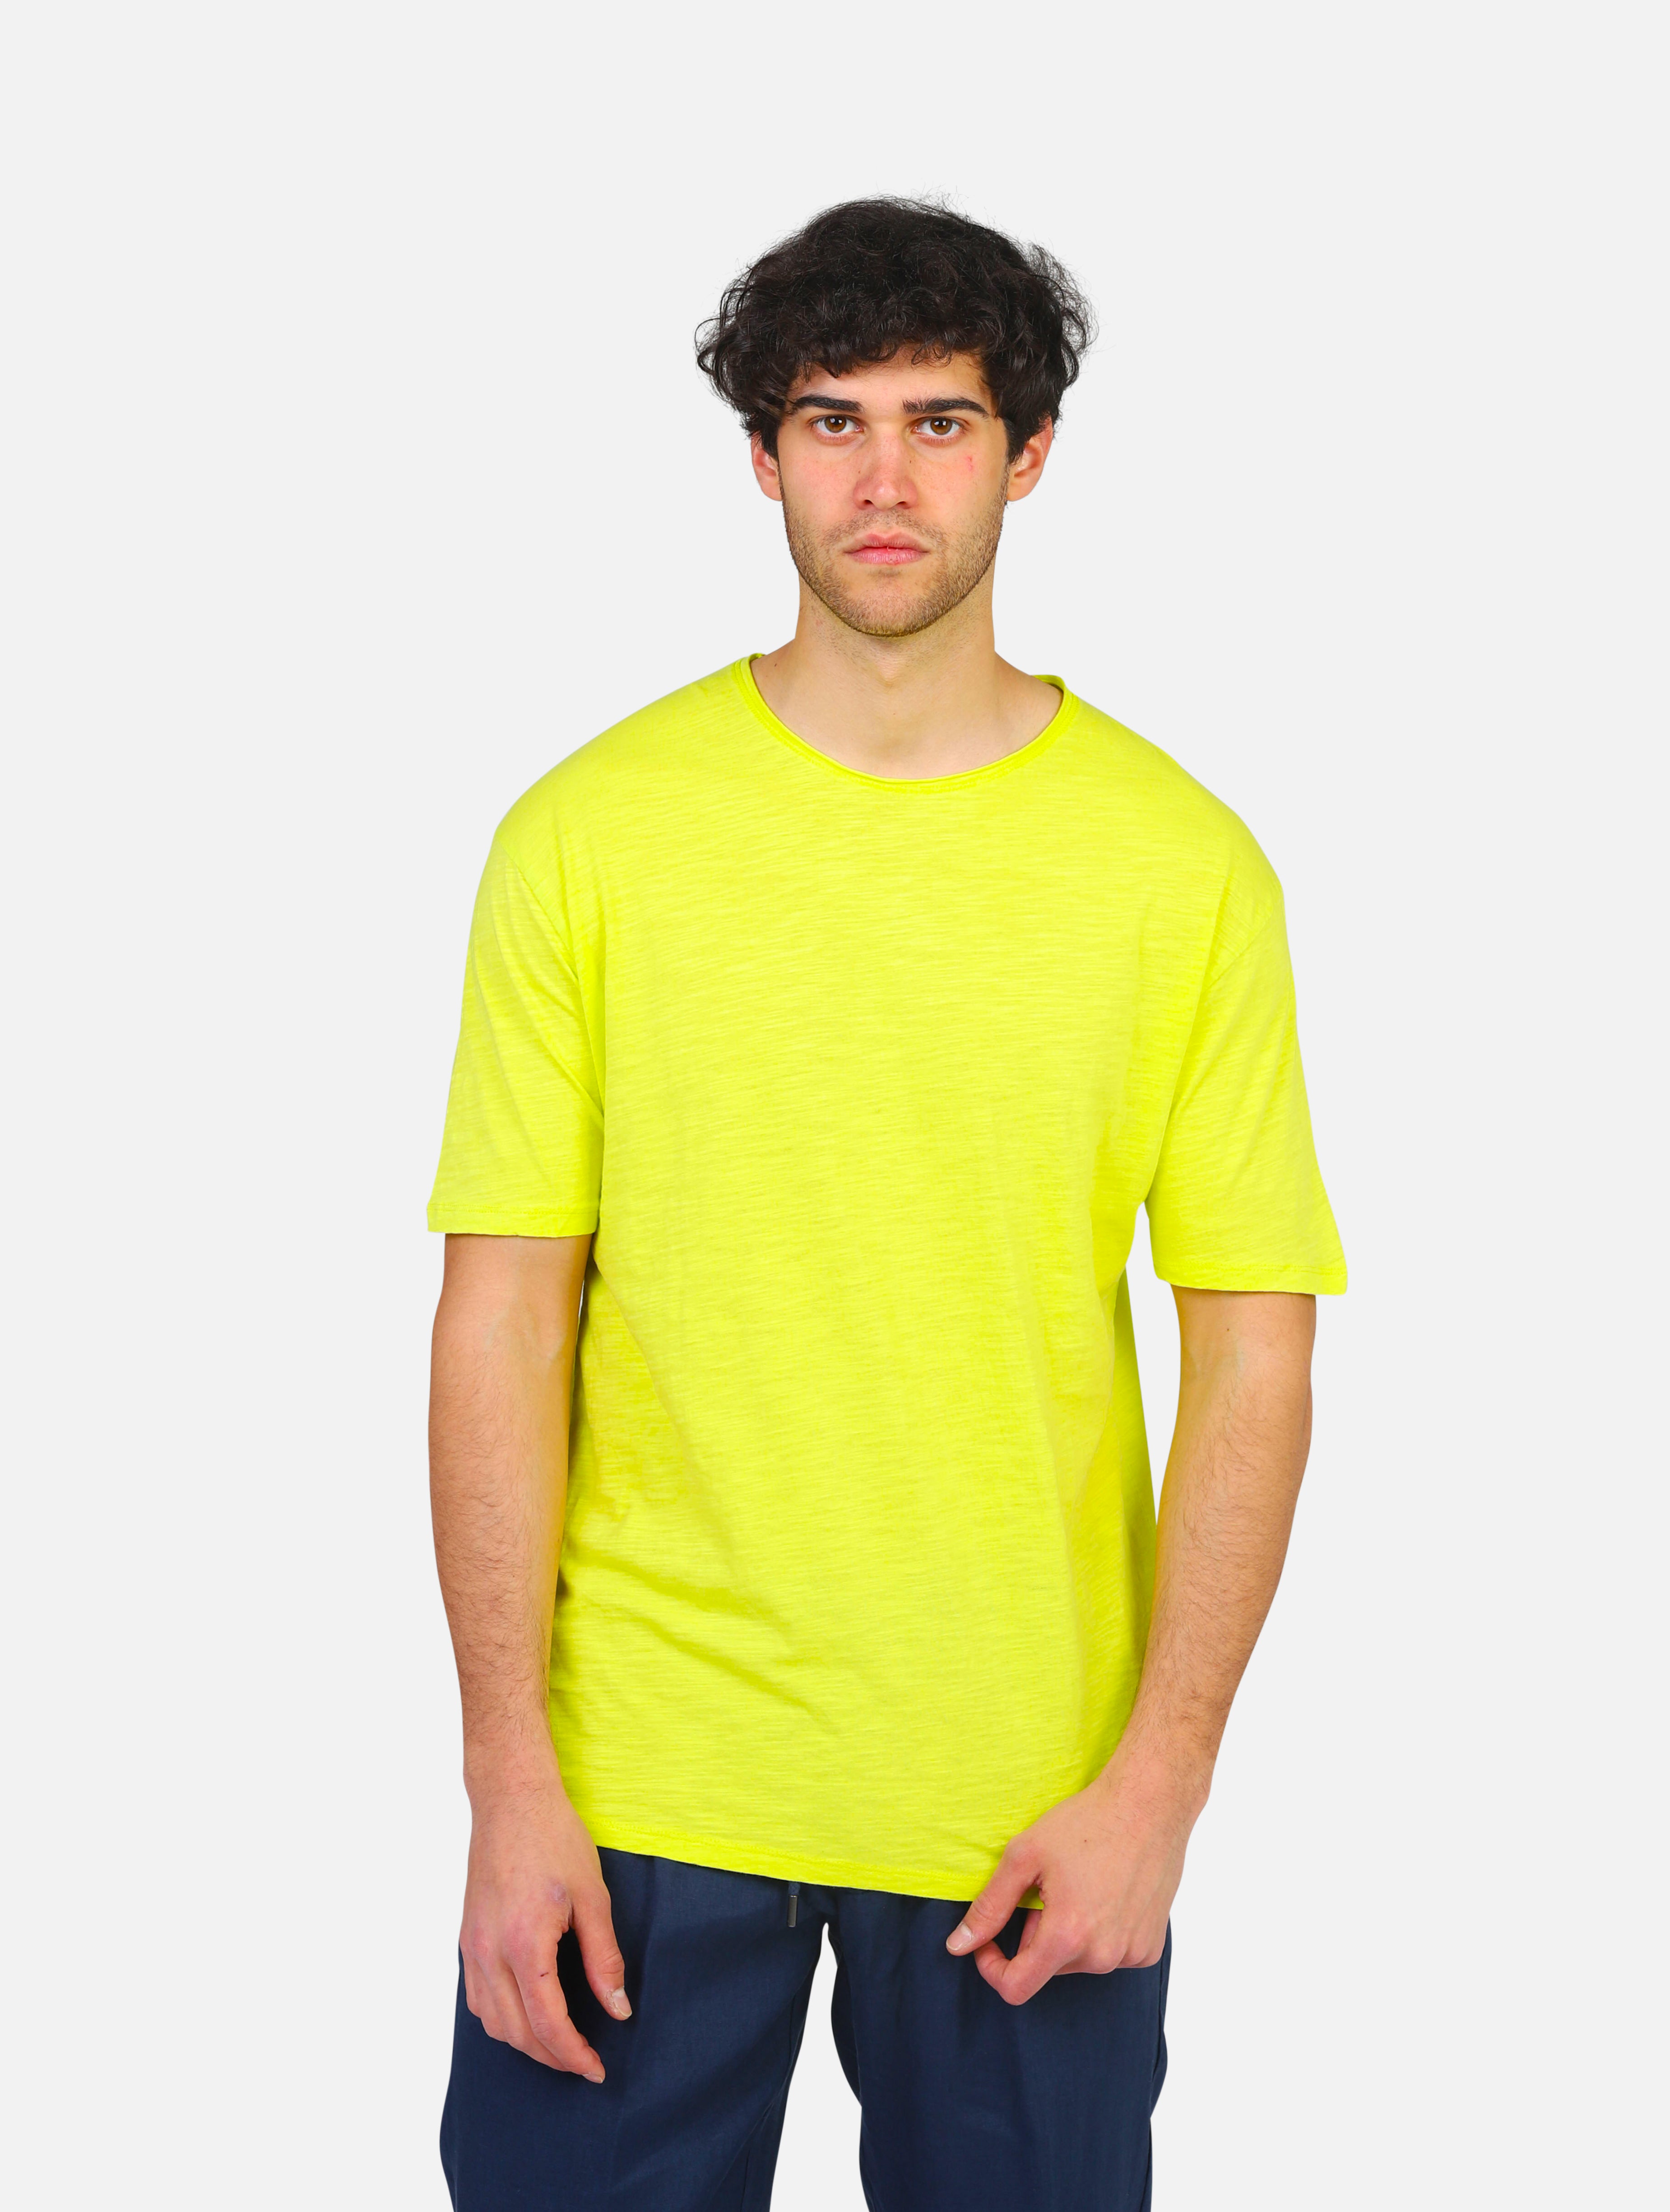 T-shirt gianni lupo -  yellow uomo 